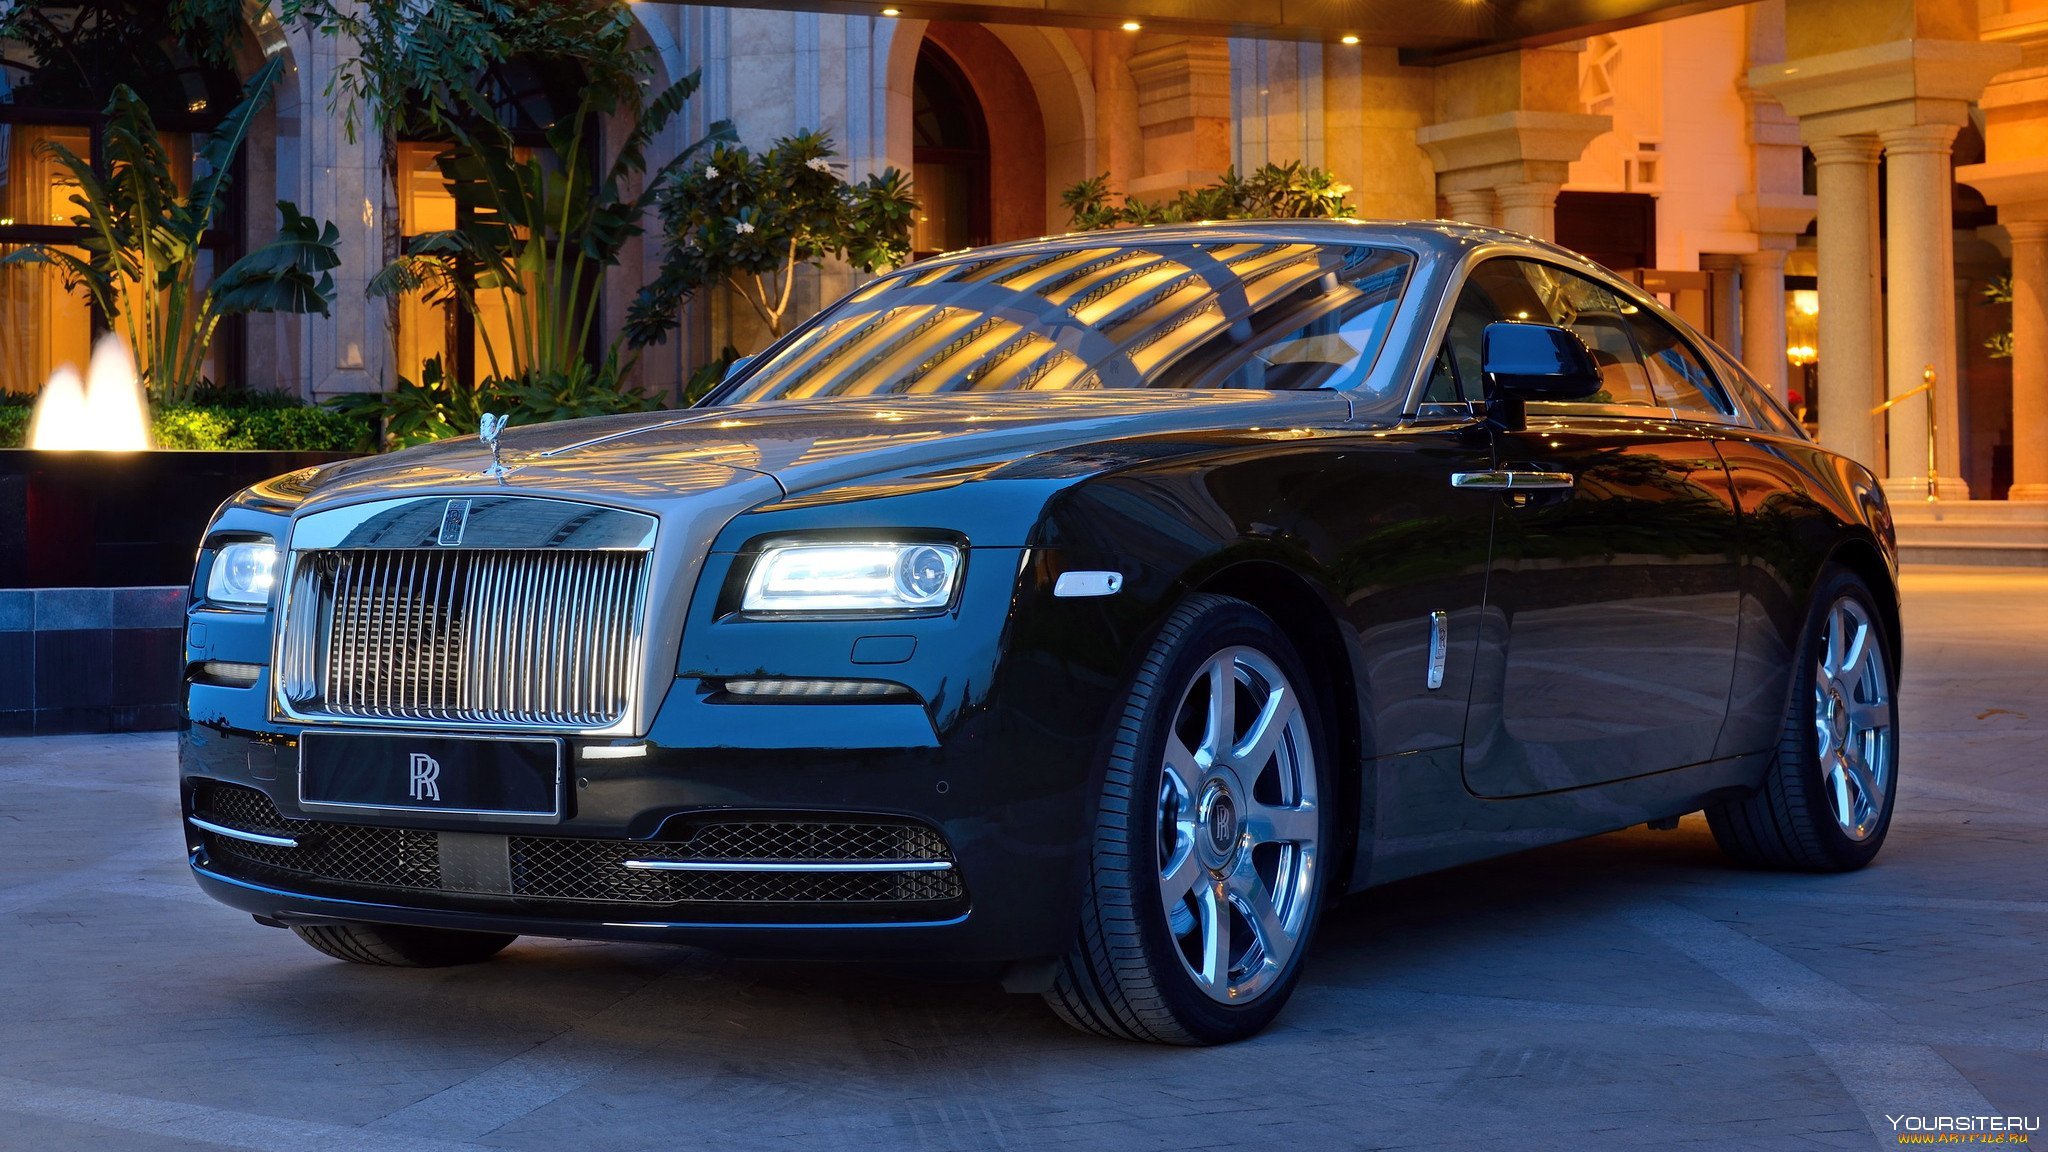 Название дорогой машины. Роллс Ройс 2013. Rolls-Royce Wraith (2013). Роллс Ройс Майбах. Роллс Ройс Luxury.